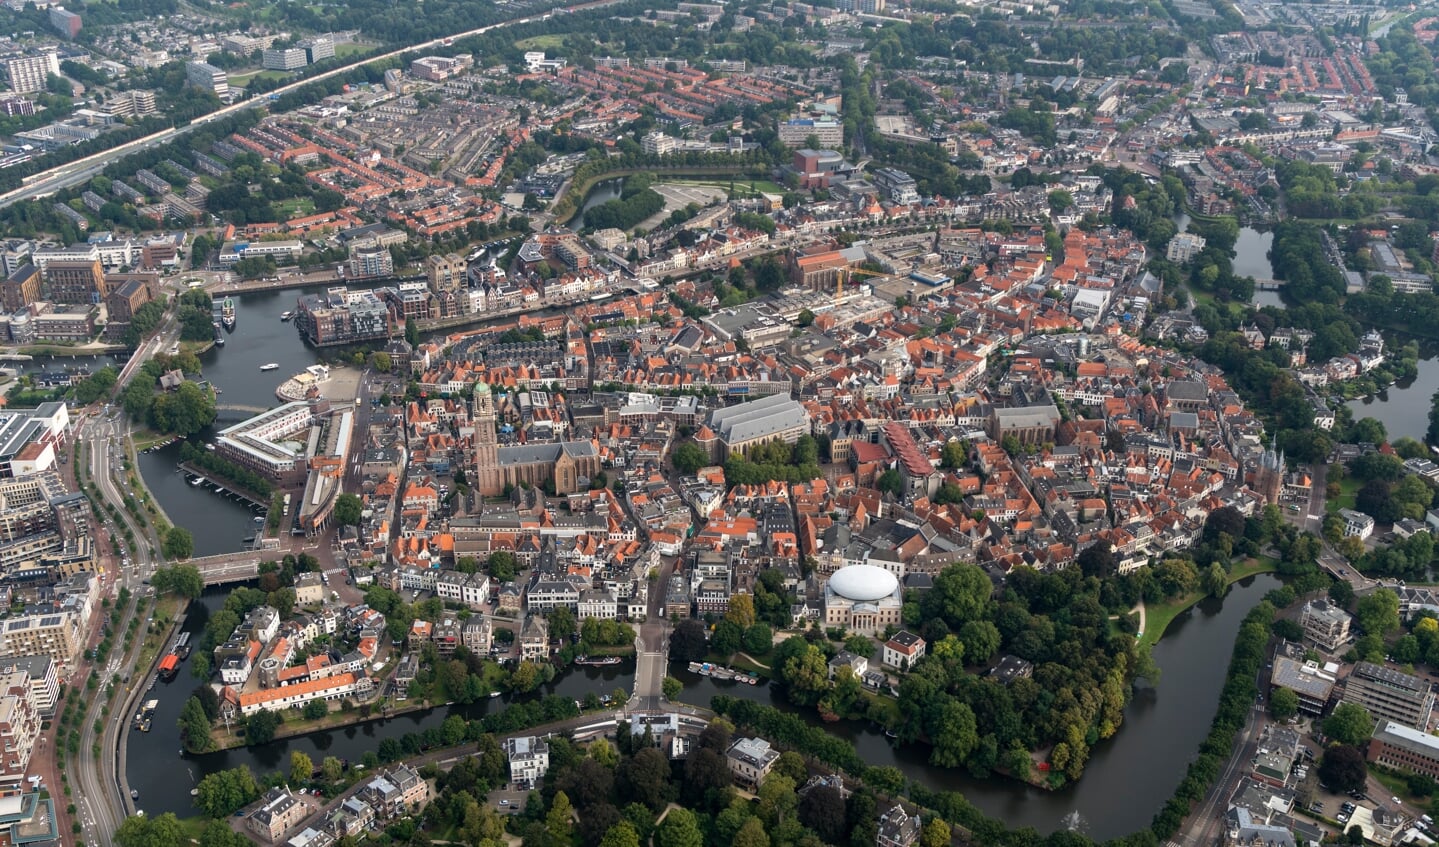 Zwolle scoort niet alleen op onderwijs. Ook andere voorzieningen, zoals zorg, winkels, recreatie en de grootstedelijke ambiance van een mooie, historische binnenstad liggen in Zwolle op een hoog niveau.  